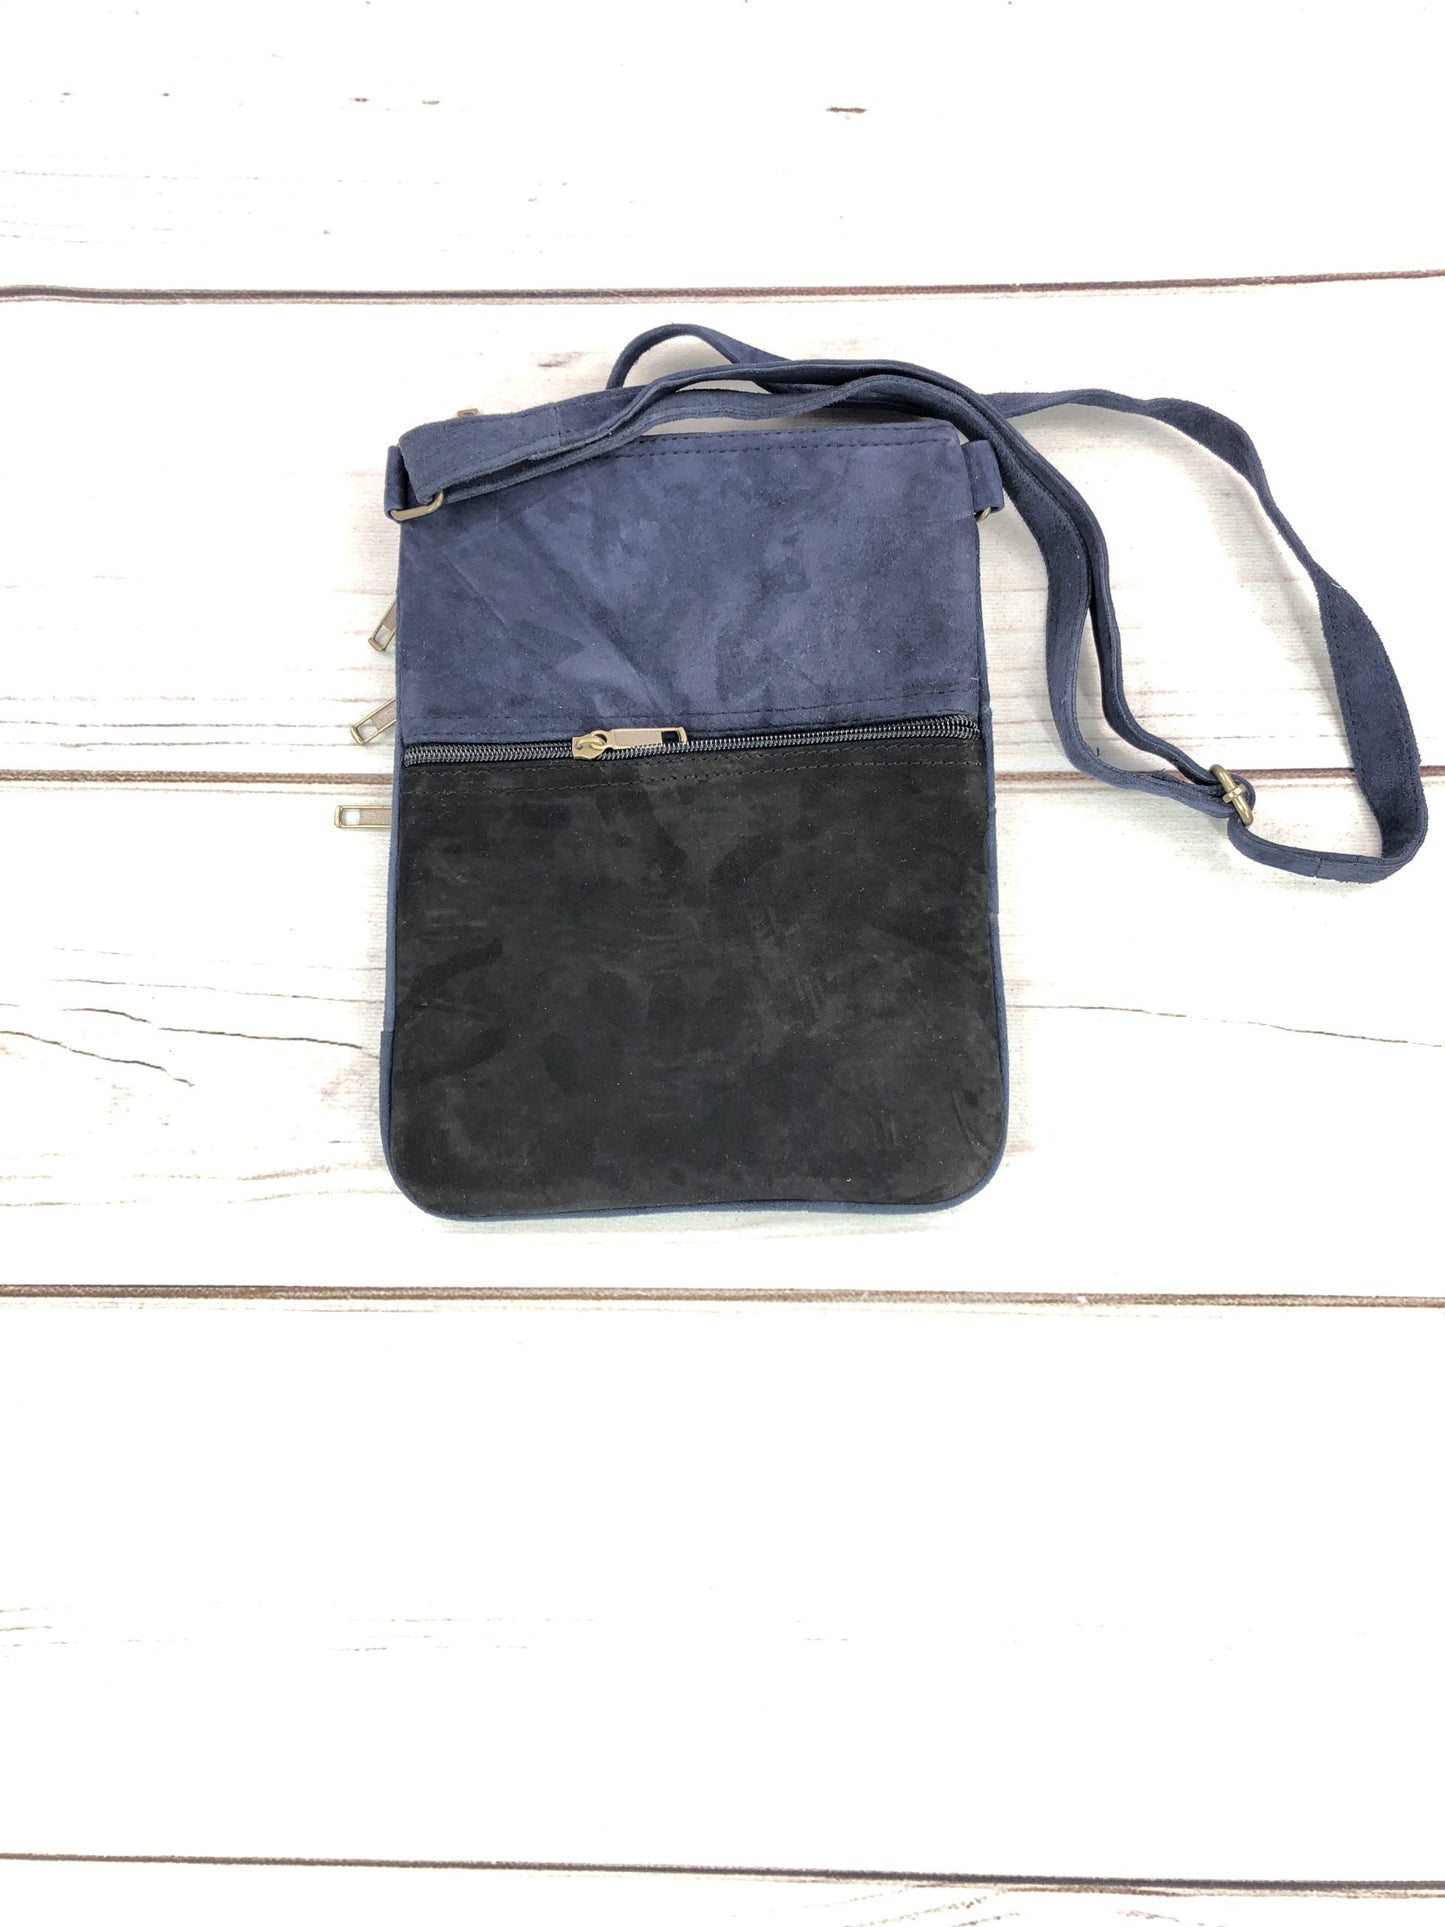 Handmade Black and Blue Suede Cross Body Bag